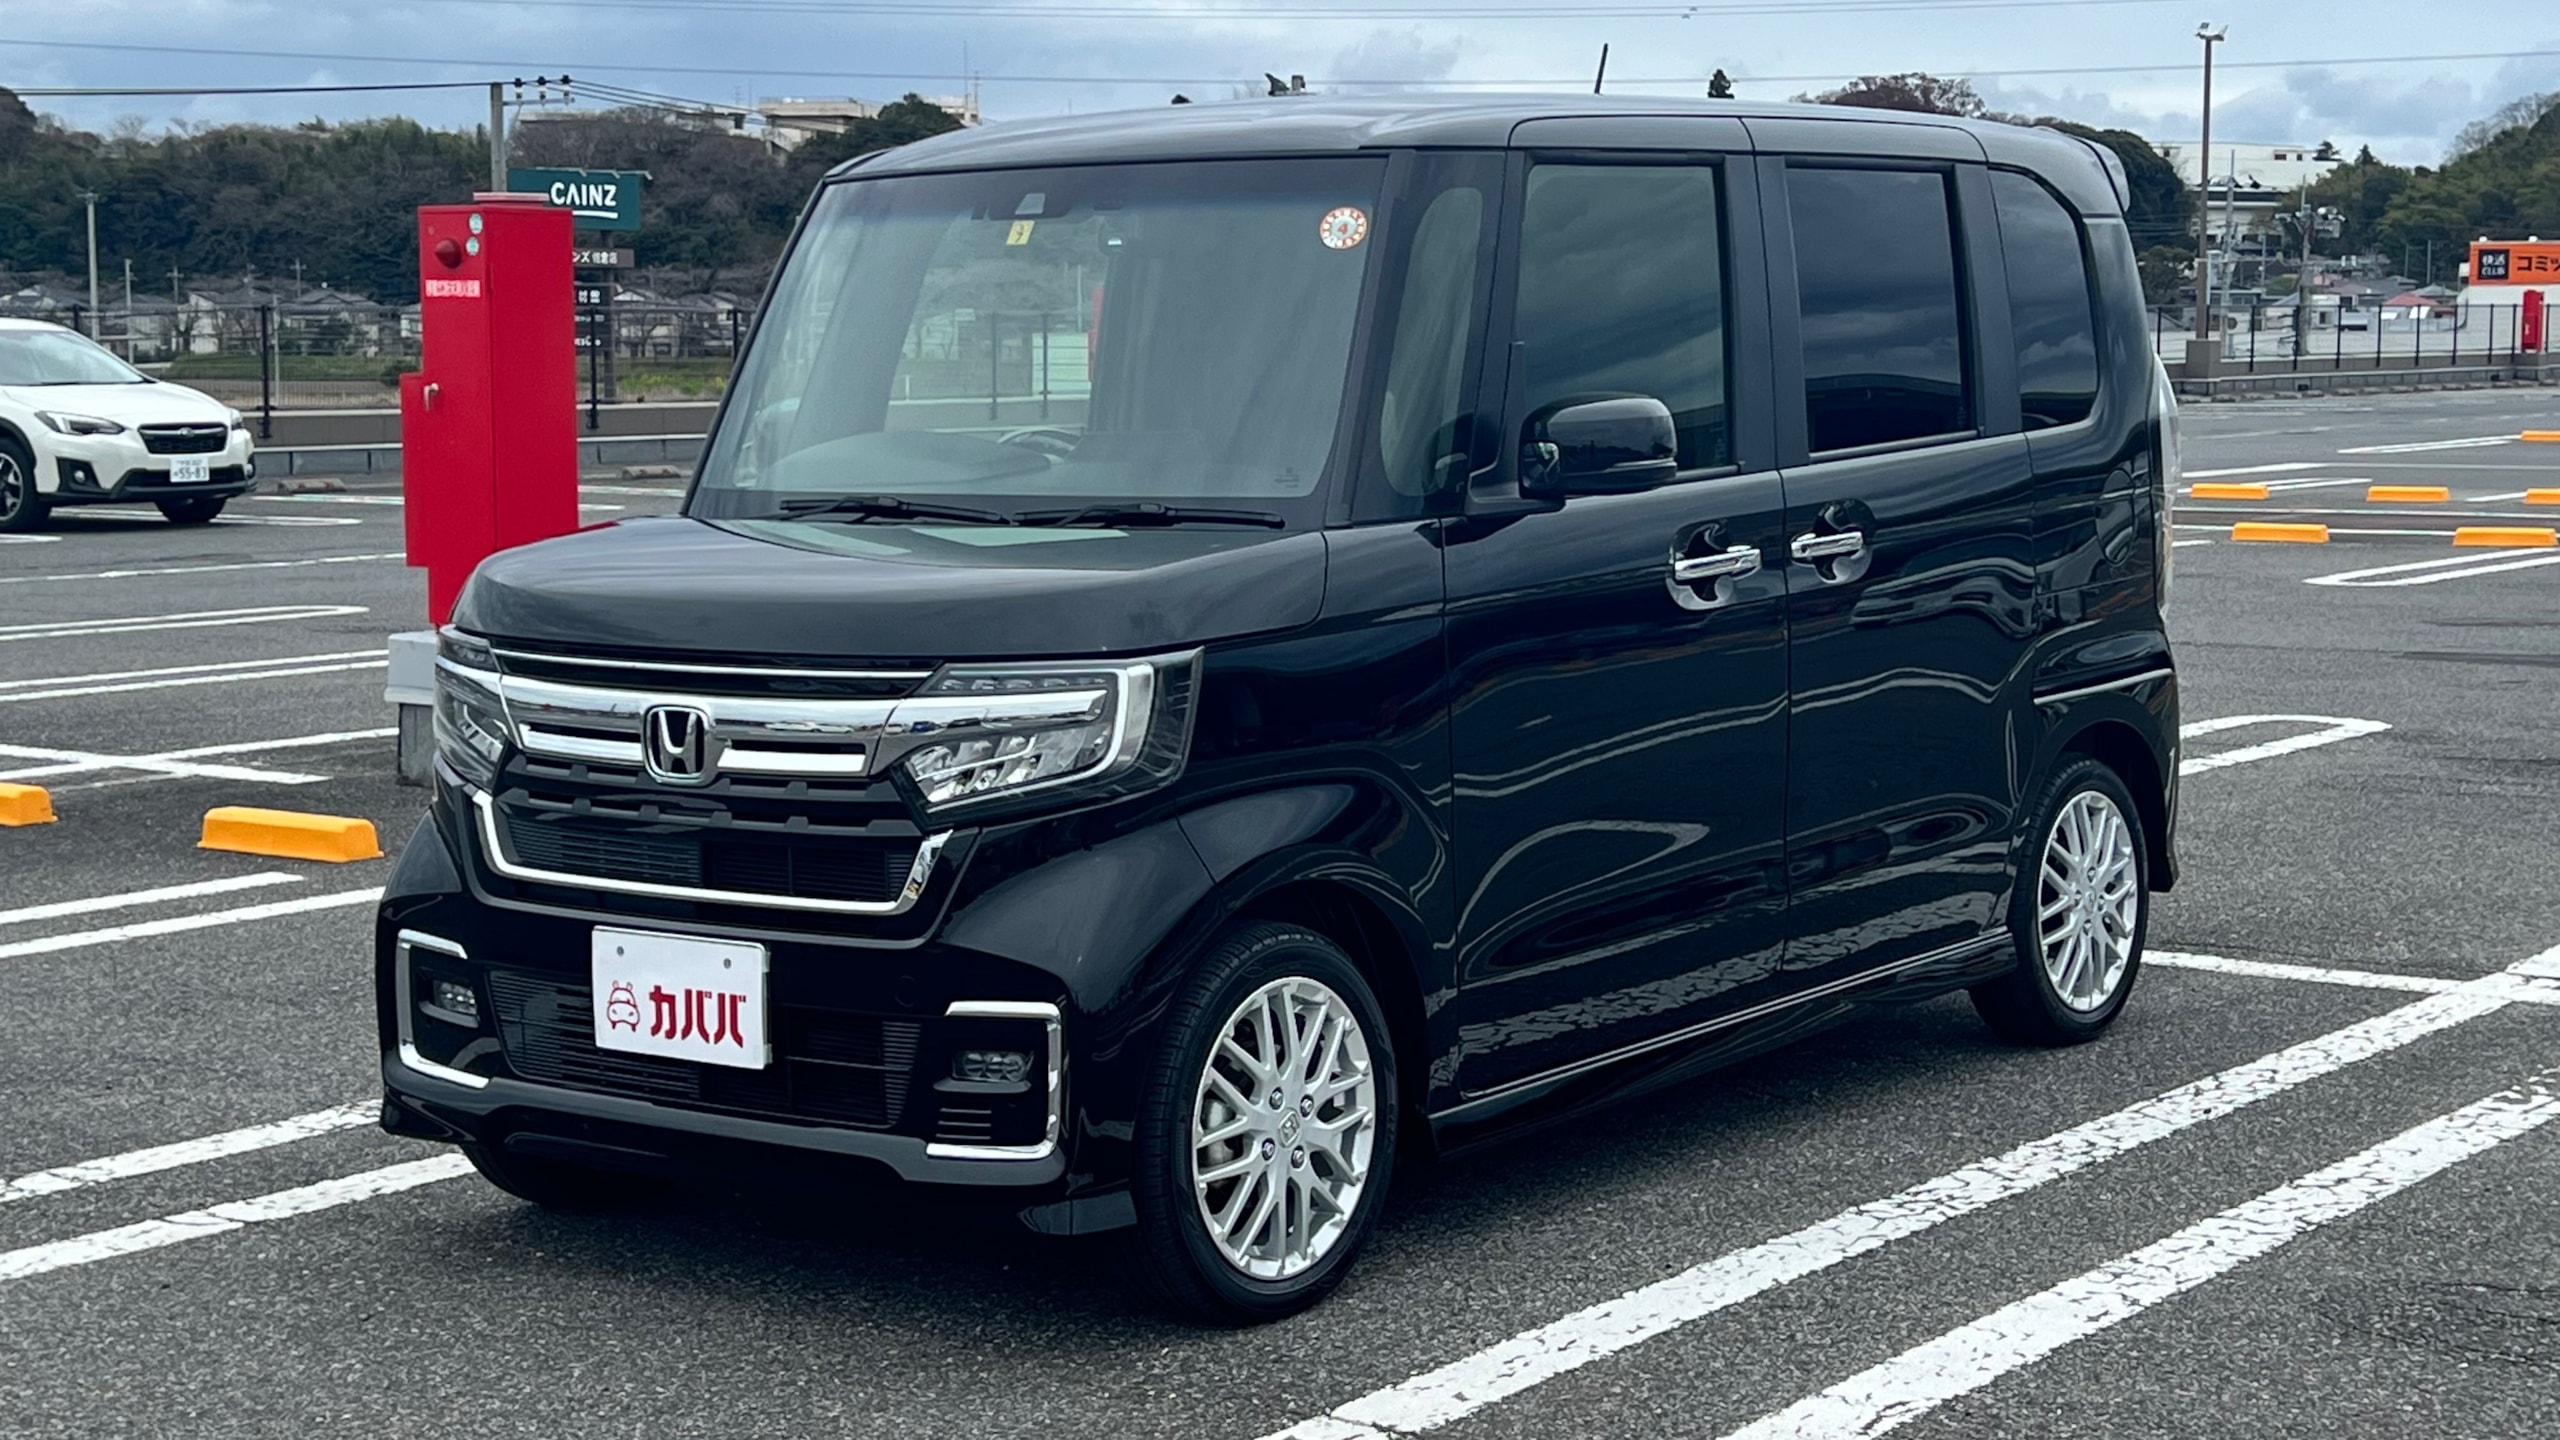 N-BOX カスタム Lターボ(ホンダ)2021年式 150万円の中古車 - 自動車